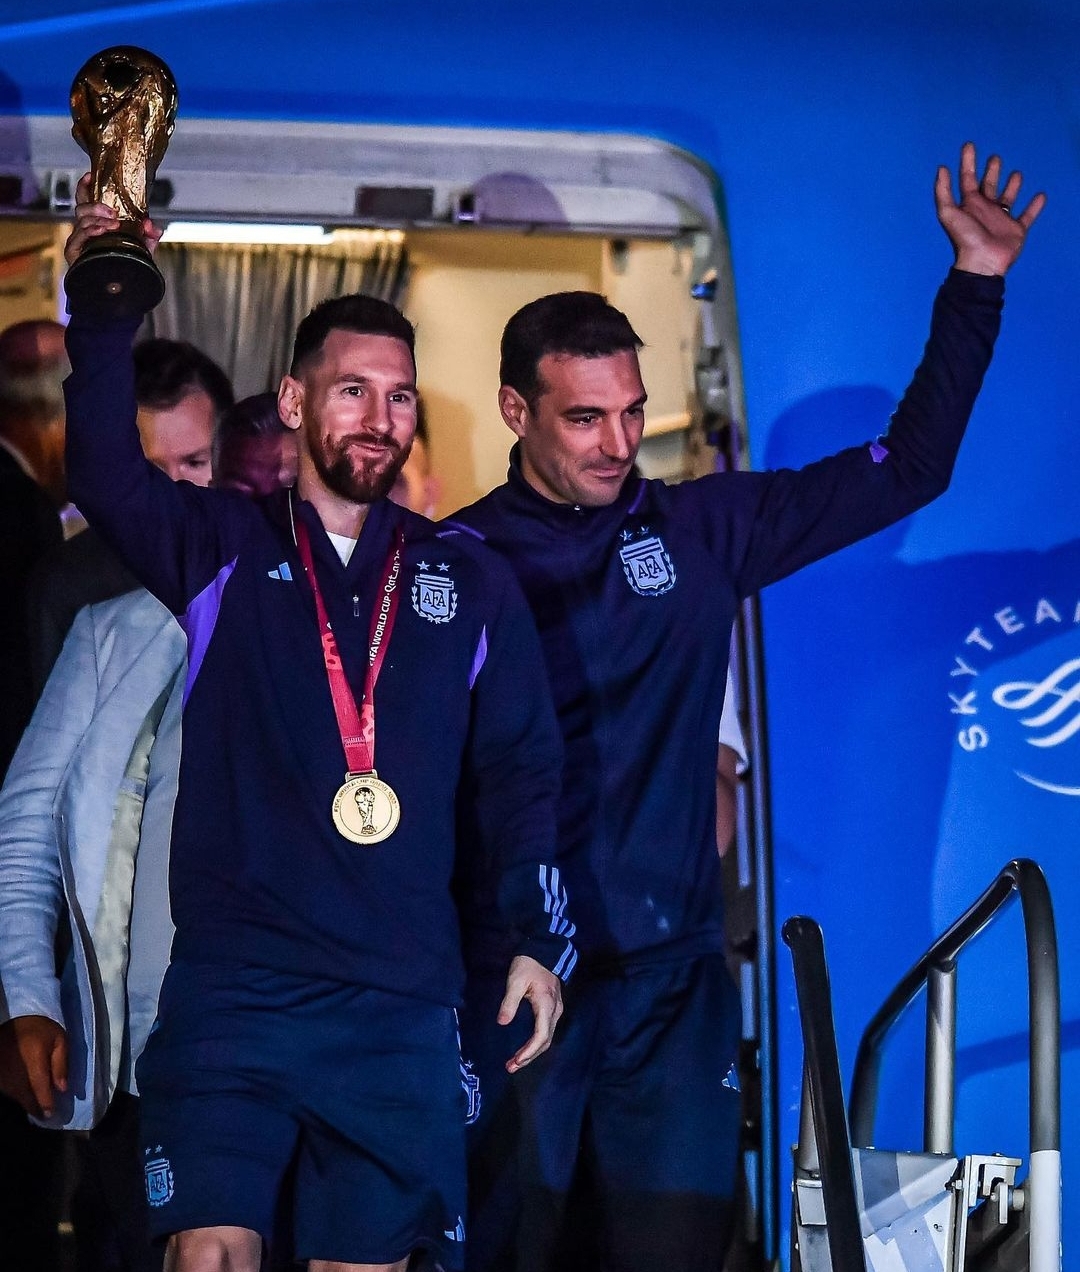 عودة منتخب الارجنتين الفائز بكأس العالم لكرة القدم الى بوينوس أيريس واستقبال حاشد في انتظاره